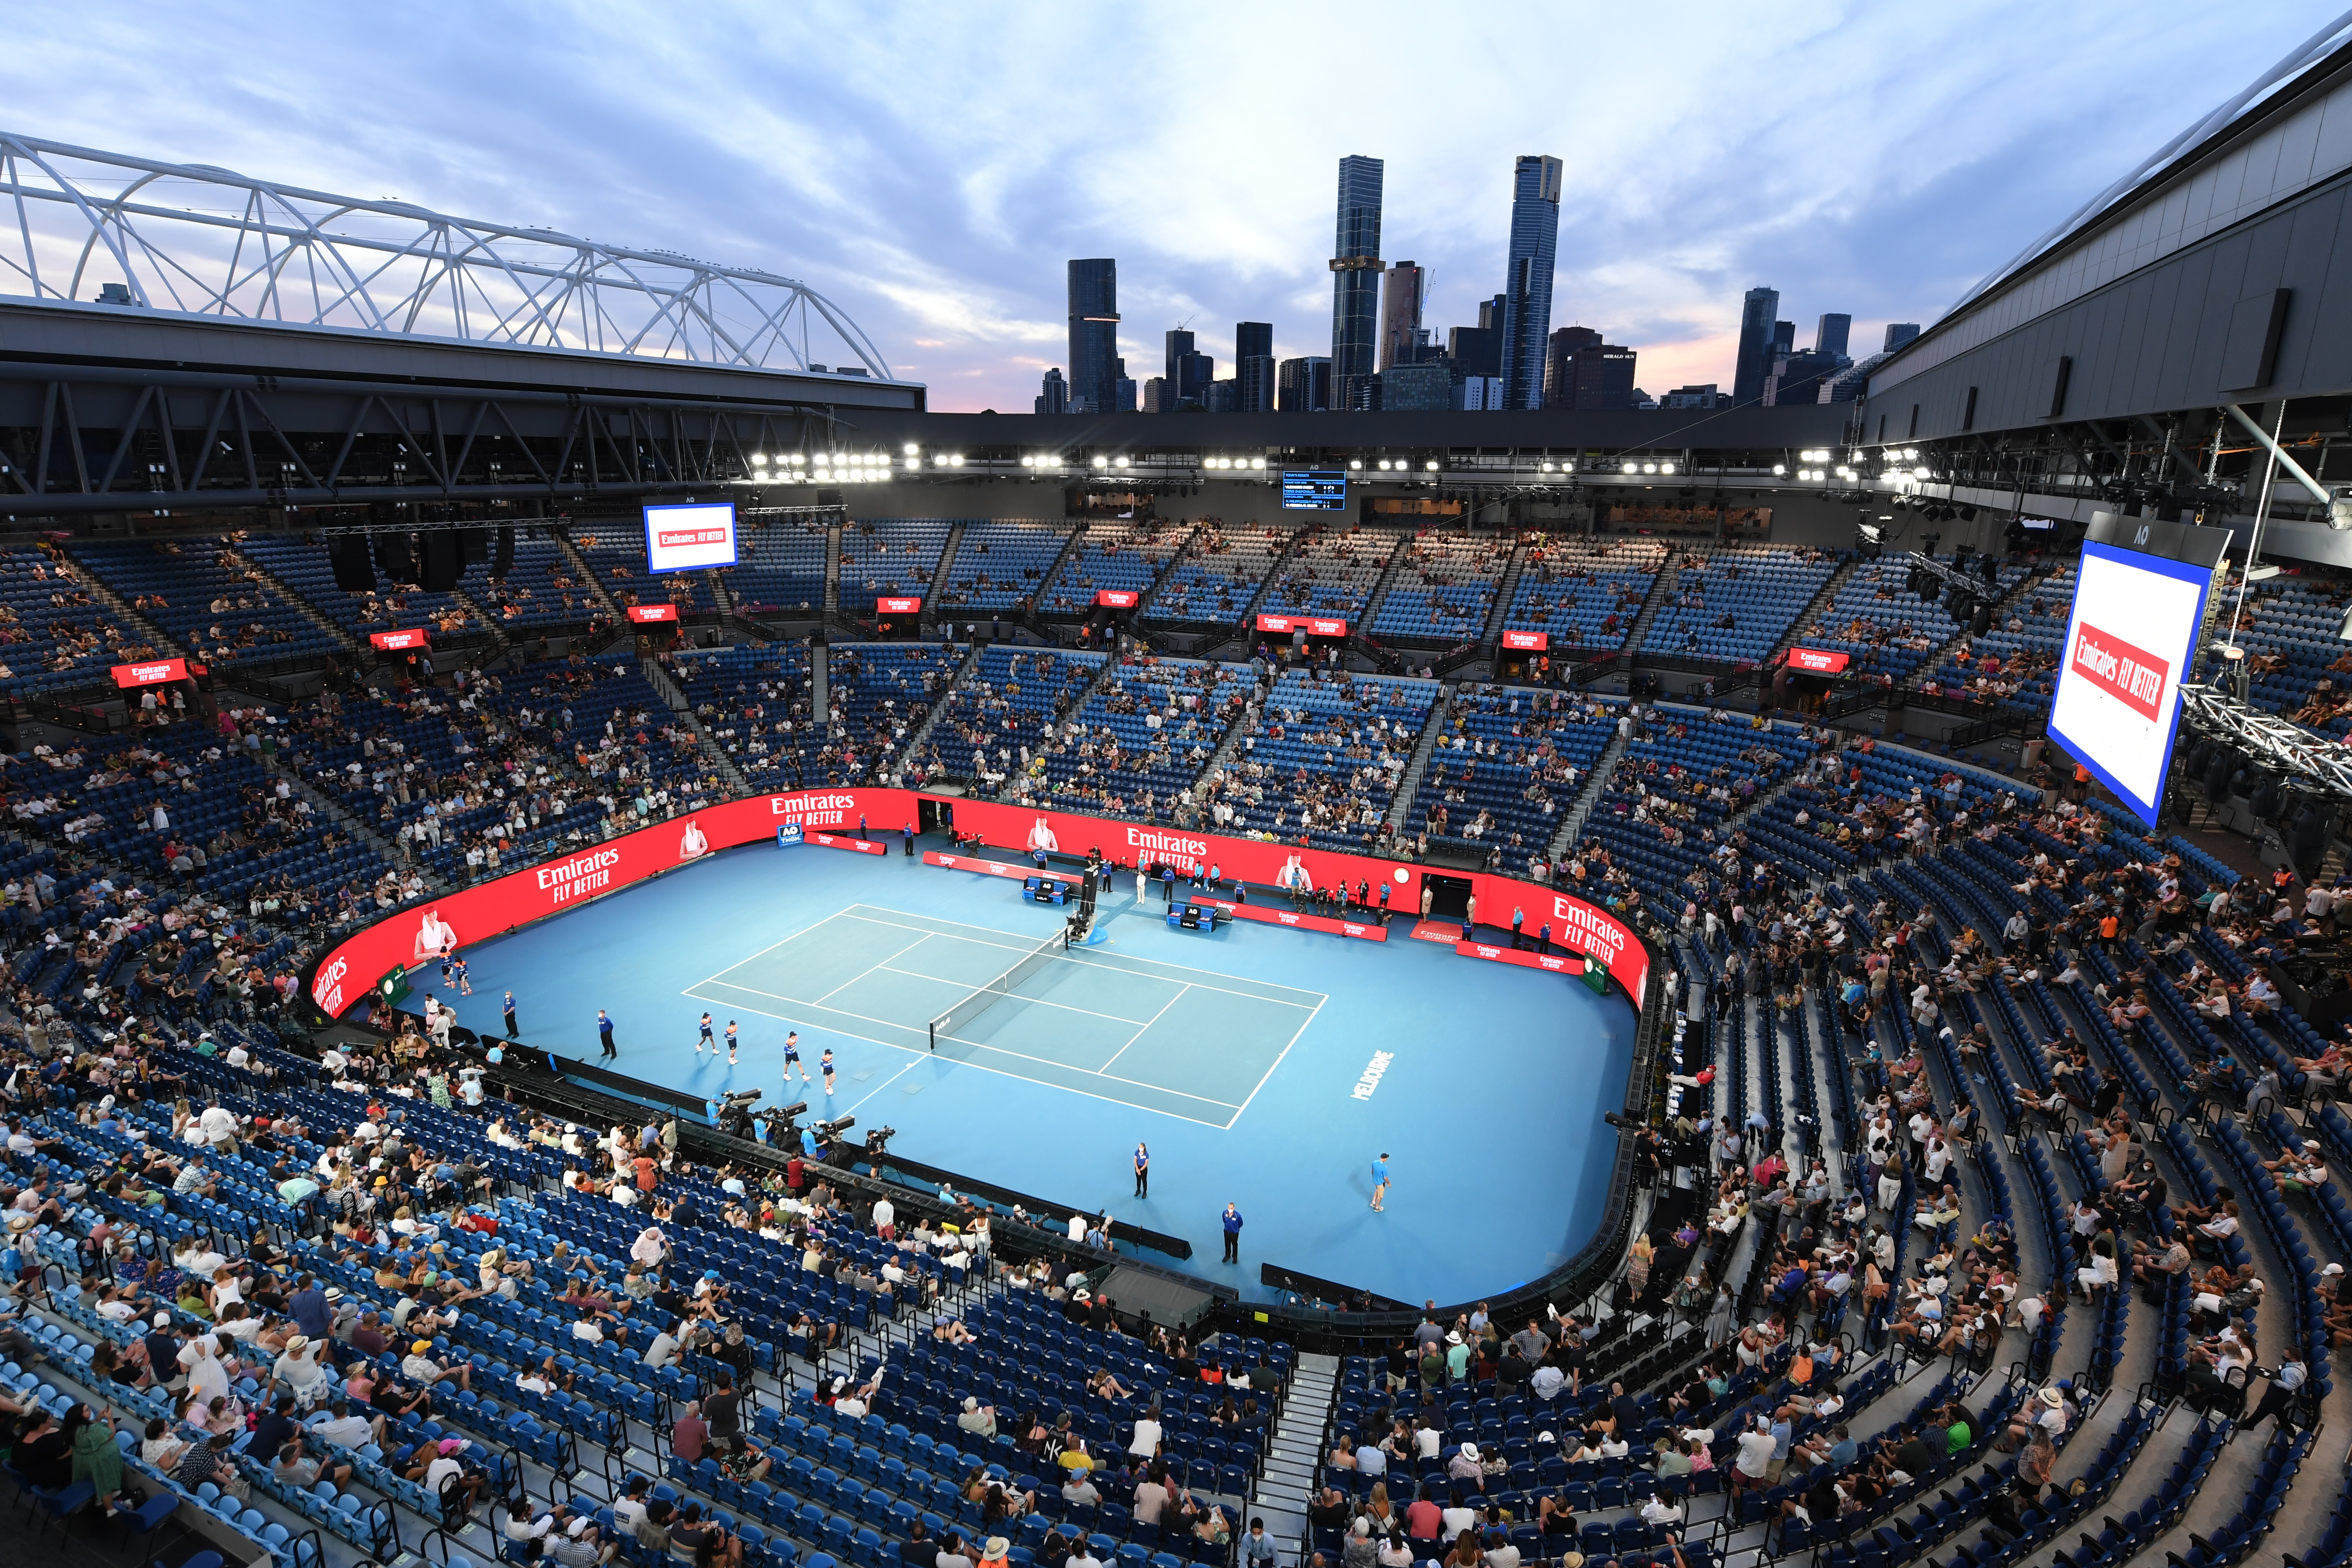 Australian Open Finals Set for Rod Laver Arena, Full Stadium List